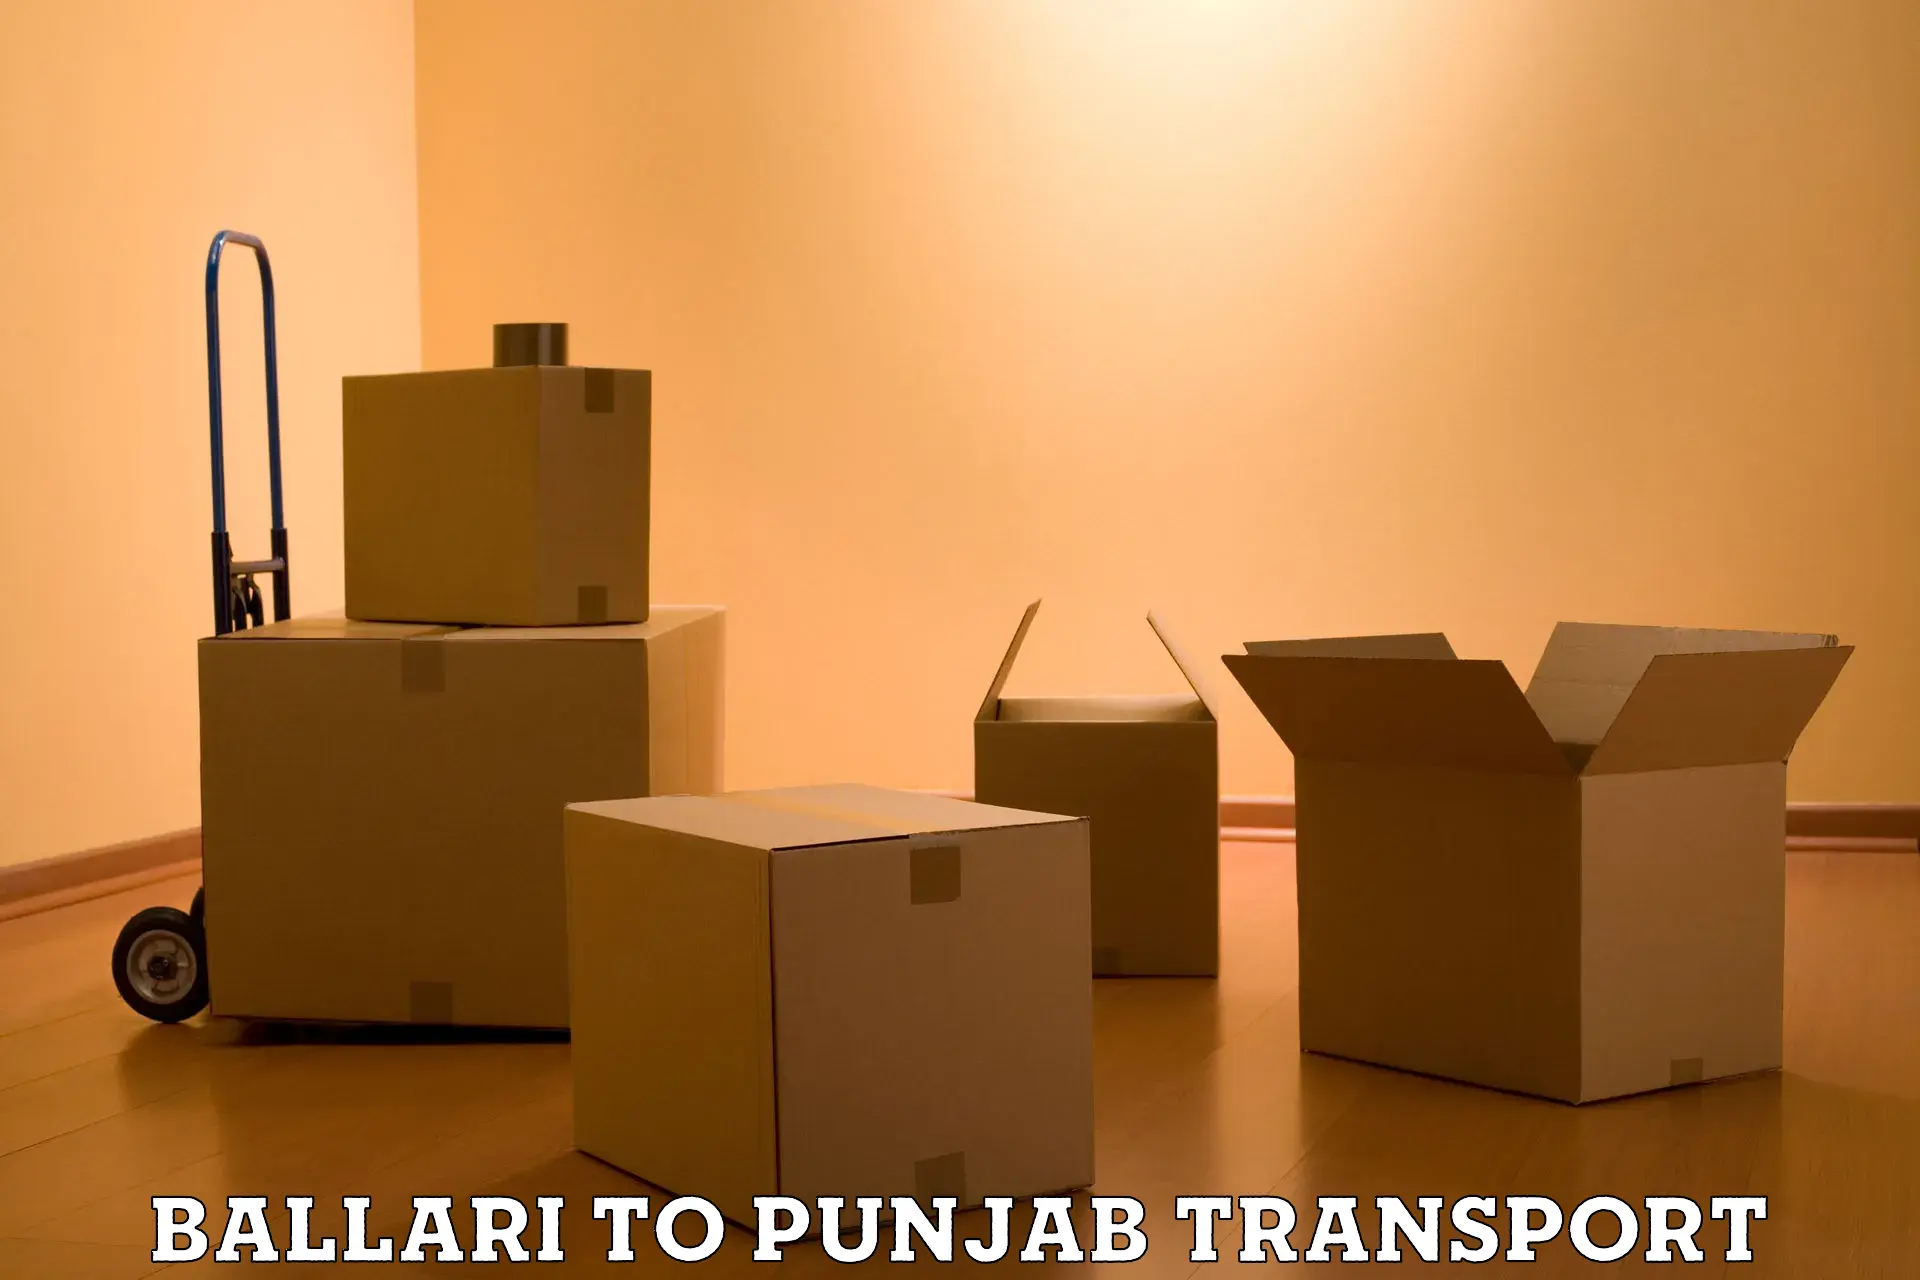 Delivery service Ballari to Dinanagar